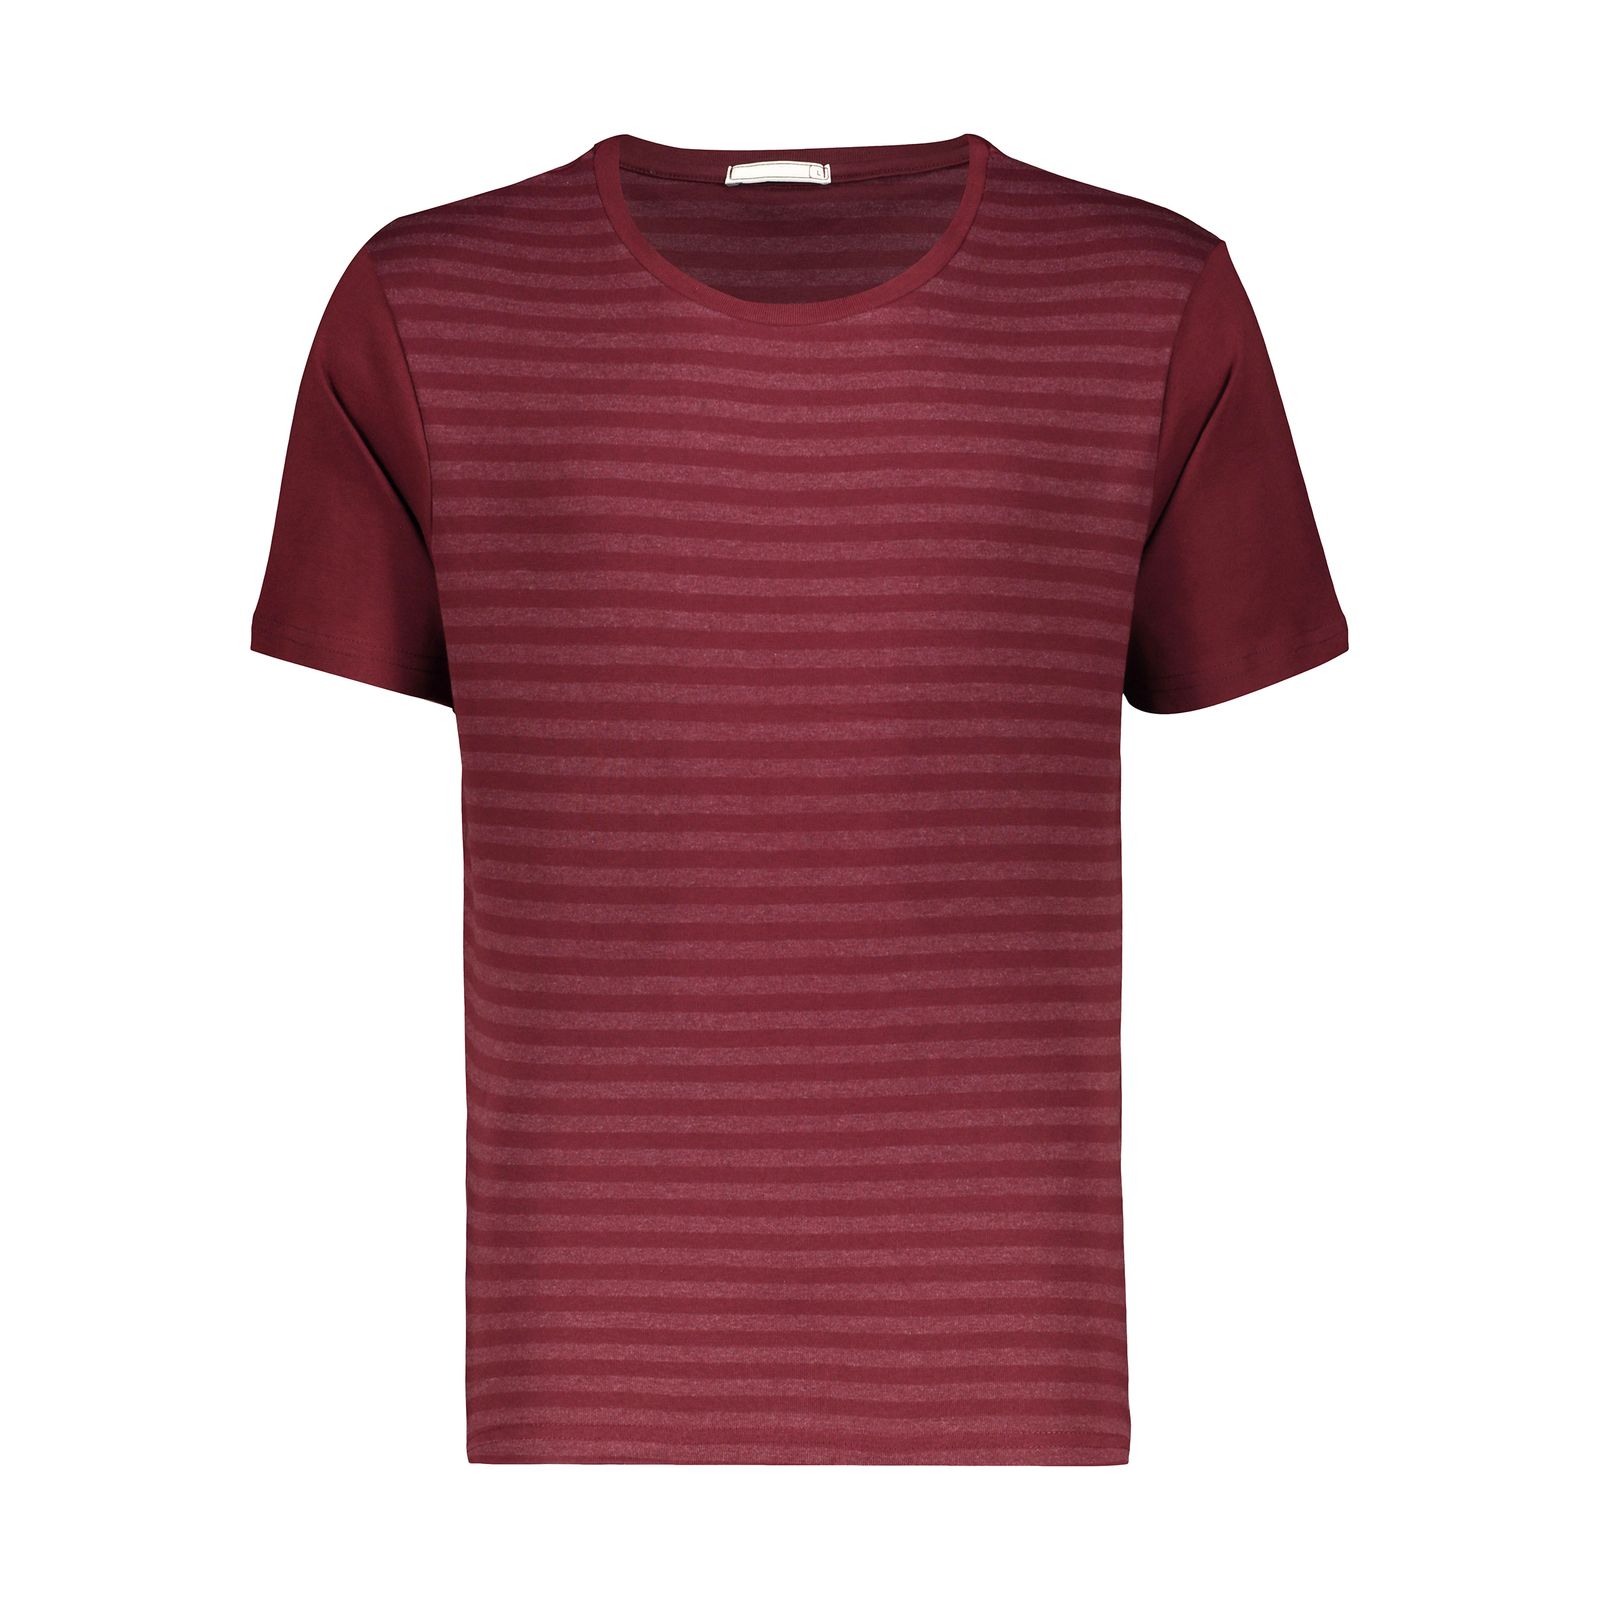 تی شرت آستین کوتاه مردانه دیجی استایل اسنشیال مدل 249112370 -  - 5